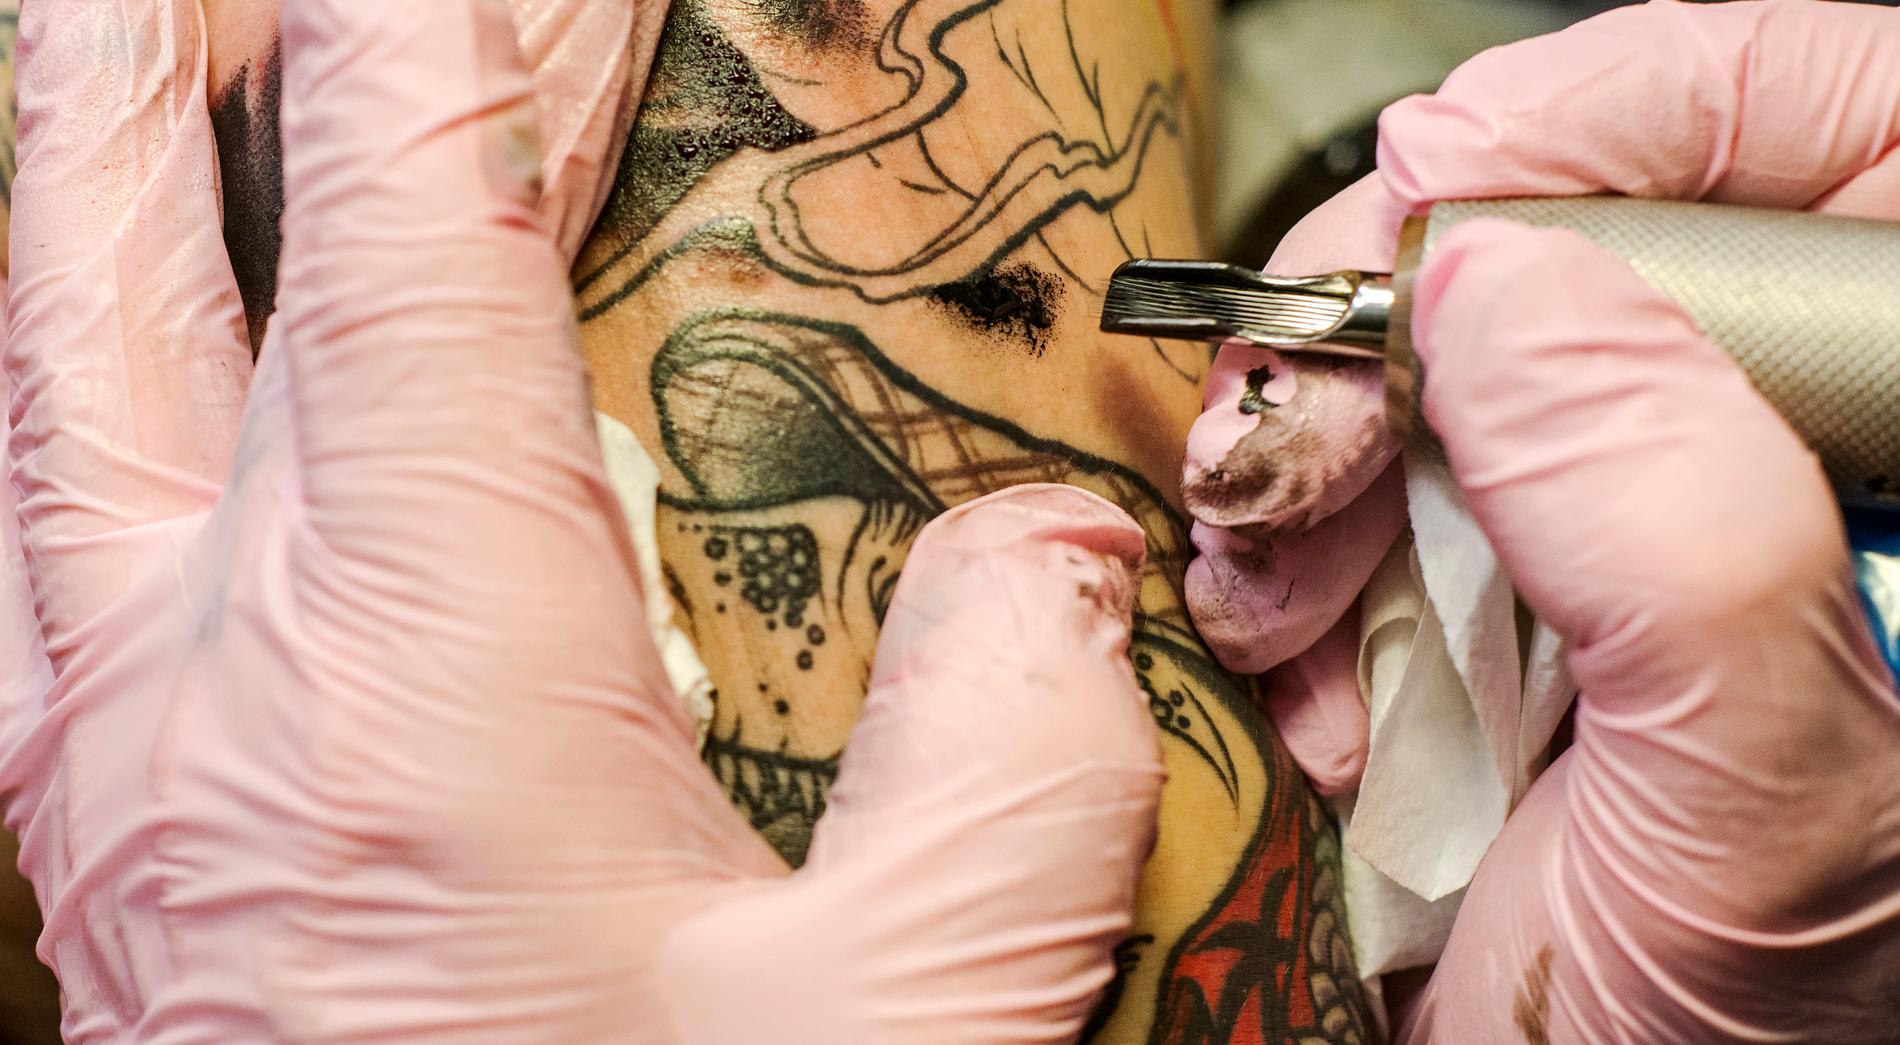 Tatueraren på bilden har inget med Niklas tatuering att göra. Arkivbild.